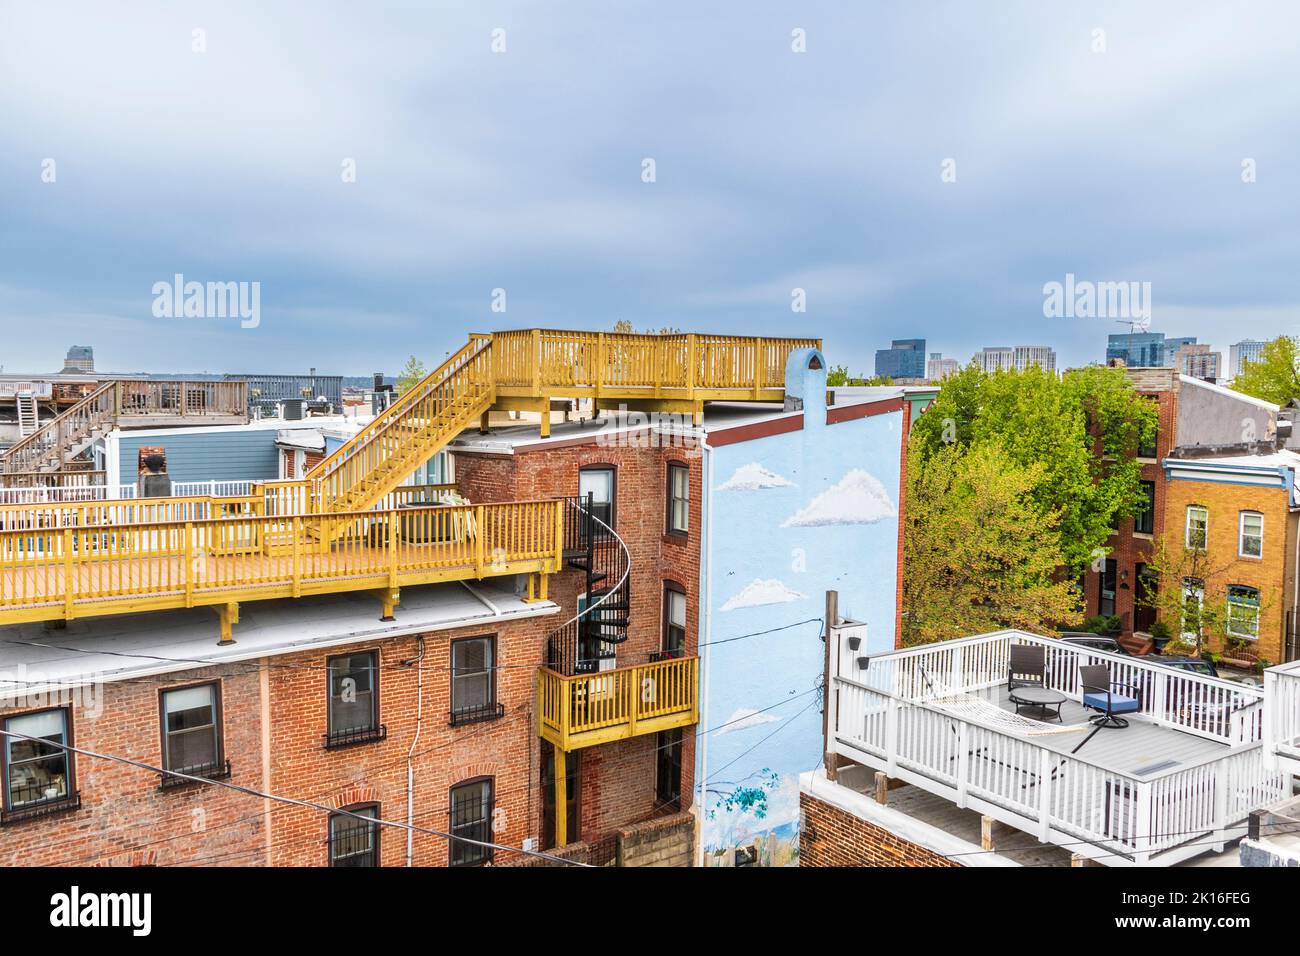 Baltimore, Maryland, berühmte Reihenhäuser werden oft mit Dachterrassen gekrönt, während junge Profis in diese historischen Häuser strömen. Stockfoto